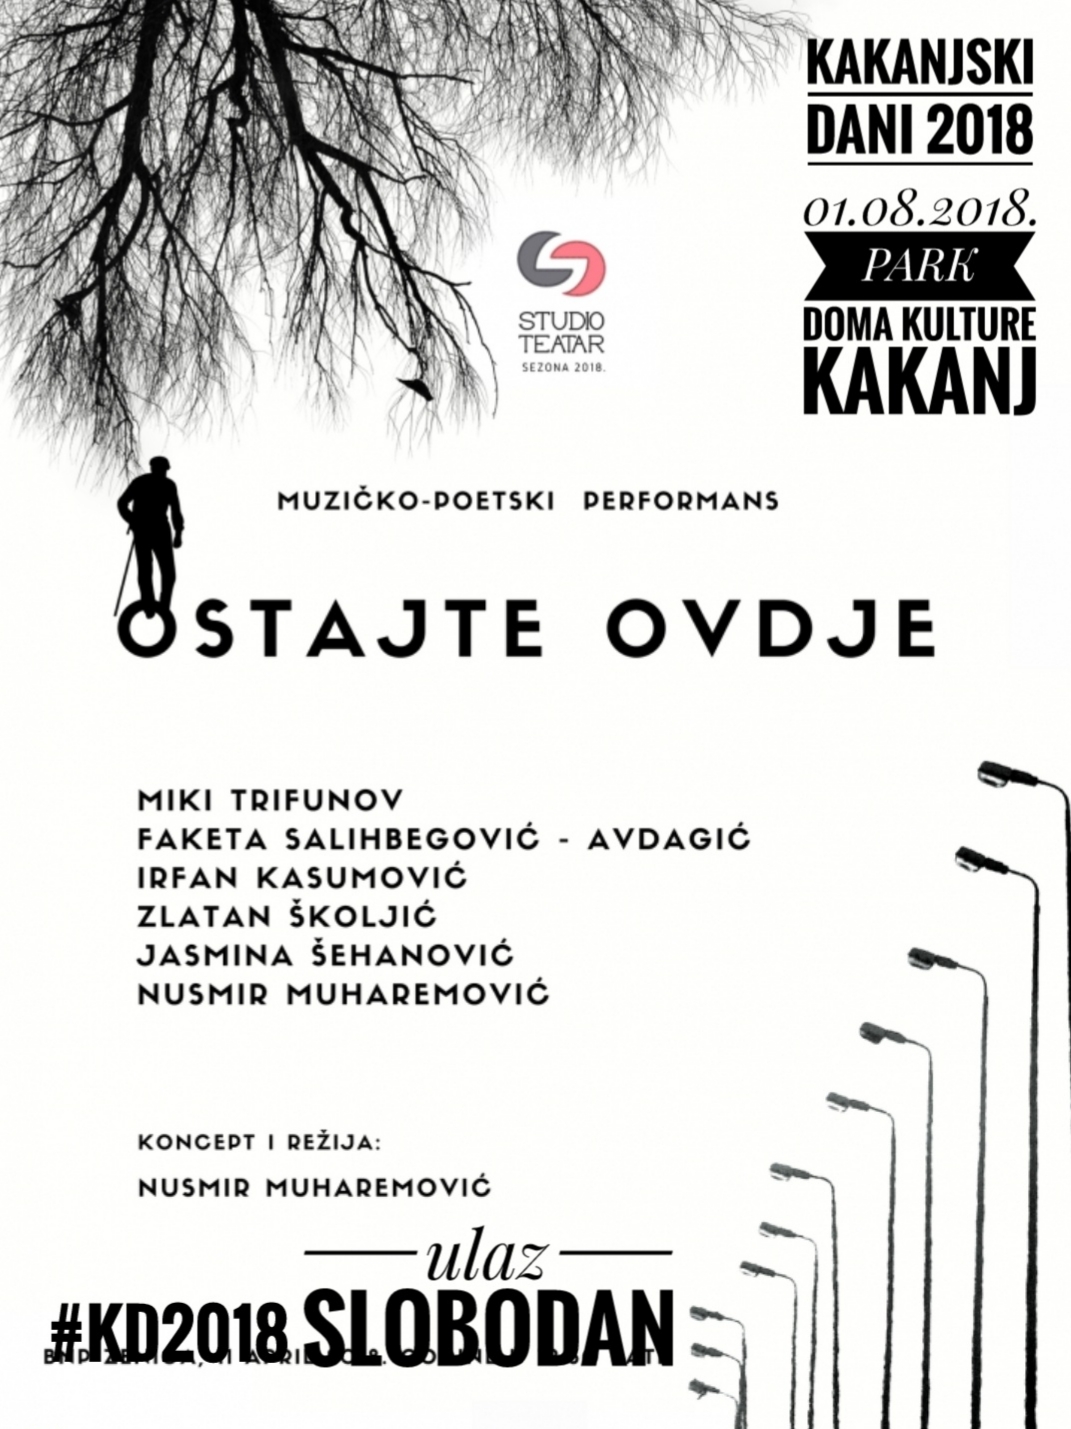 KD2018: Muzičko-poetski performans “OSTAJTE OVDJE” 01.08.2018.godine pod otvorenim nebom u Parku Doma kulture Kakanj